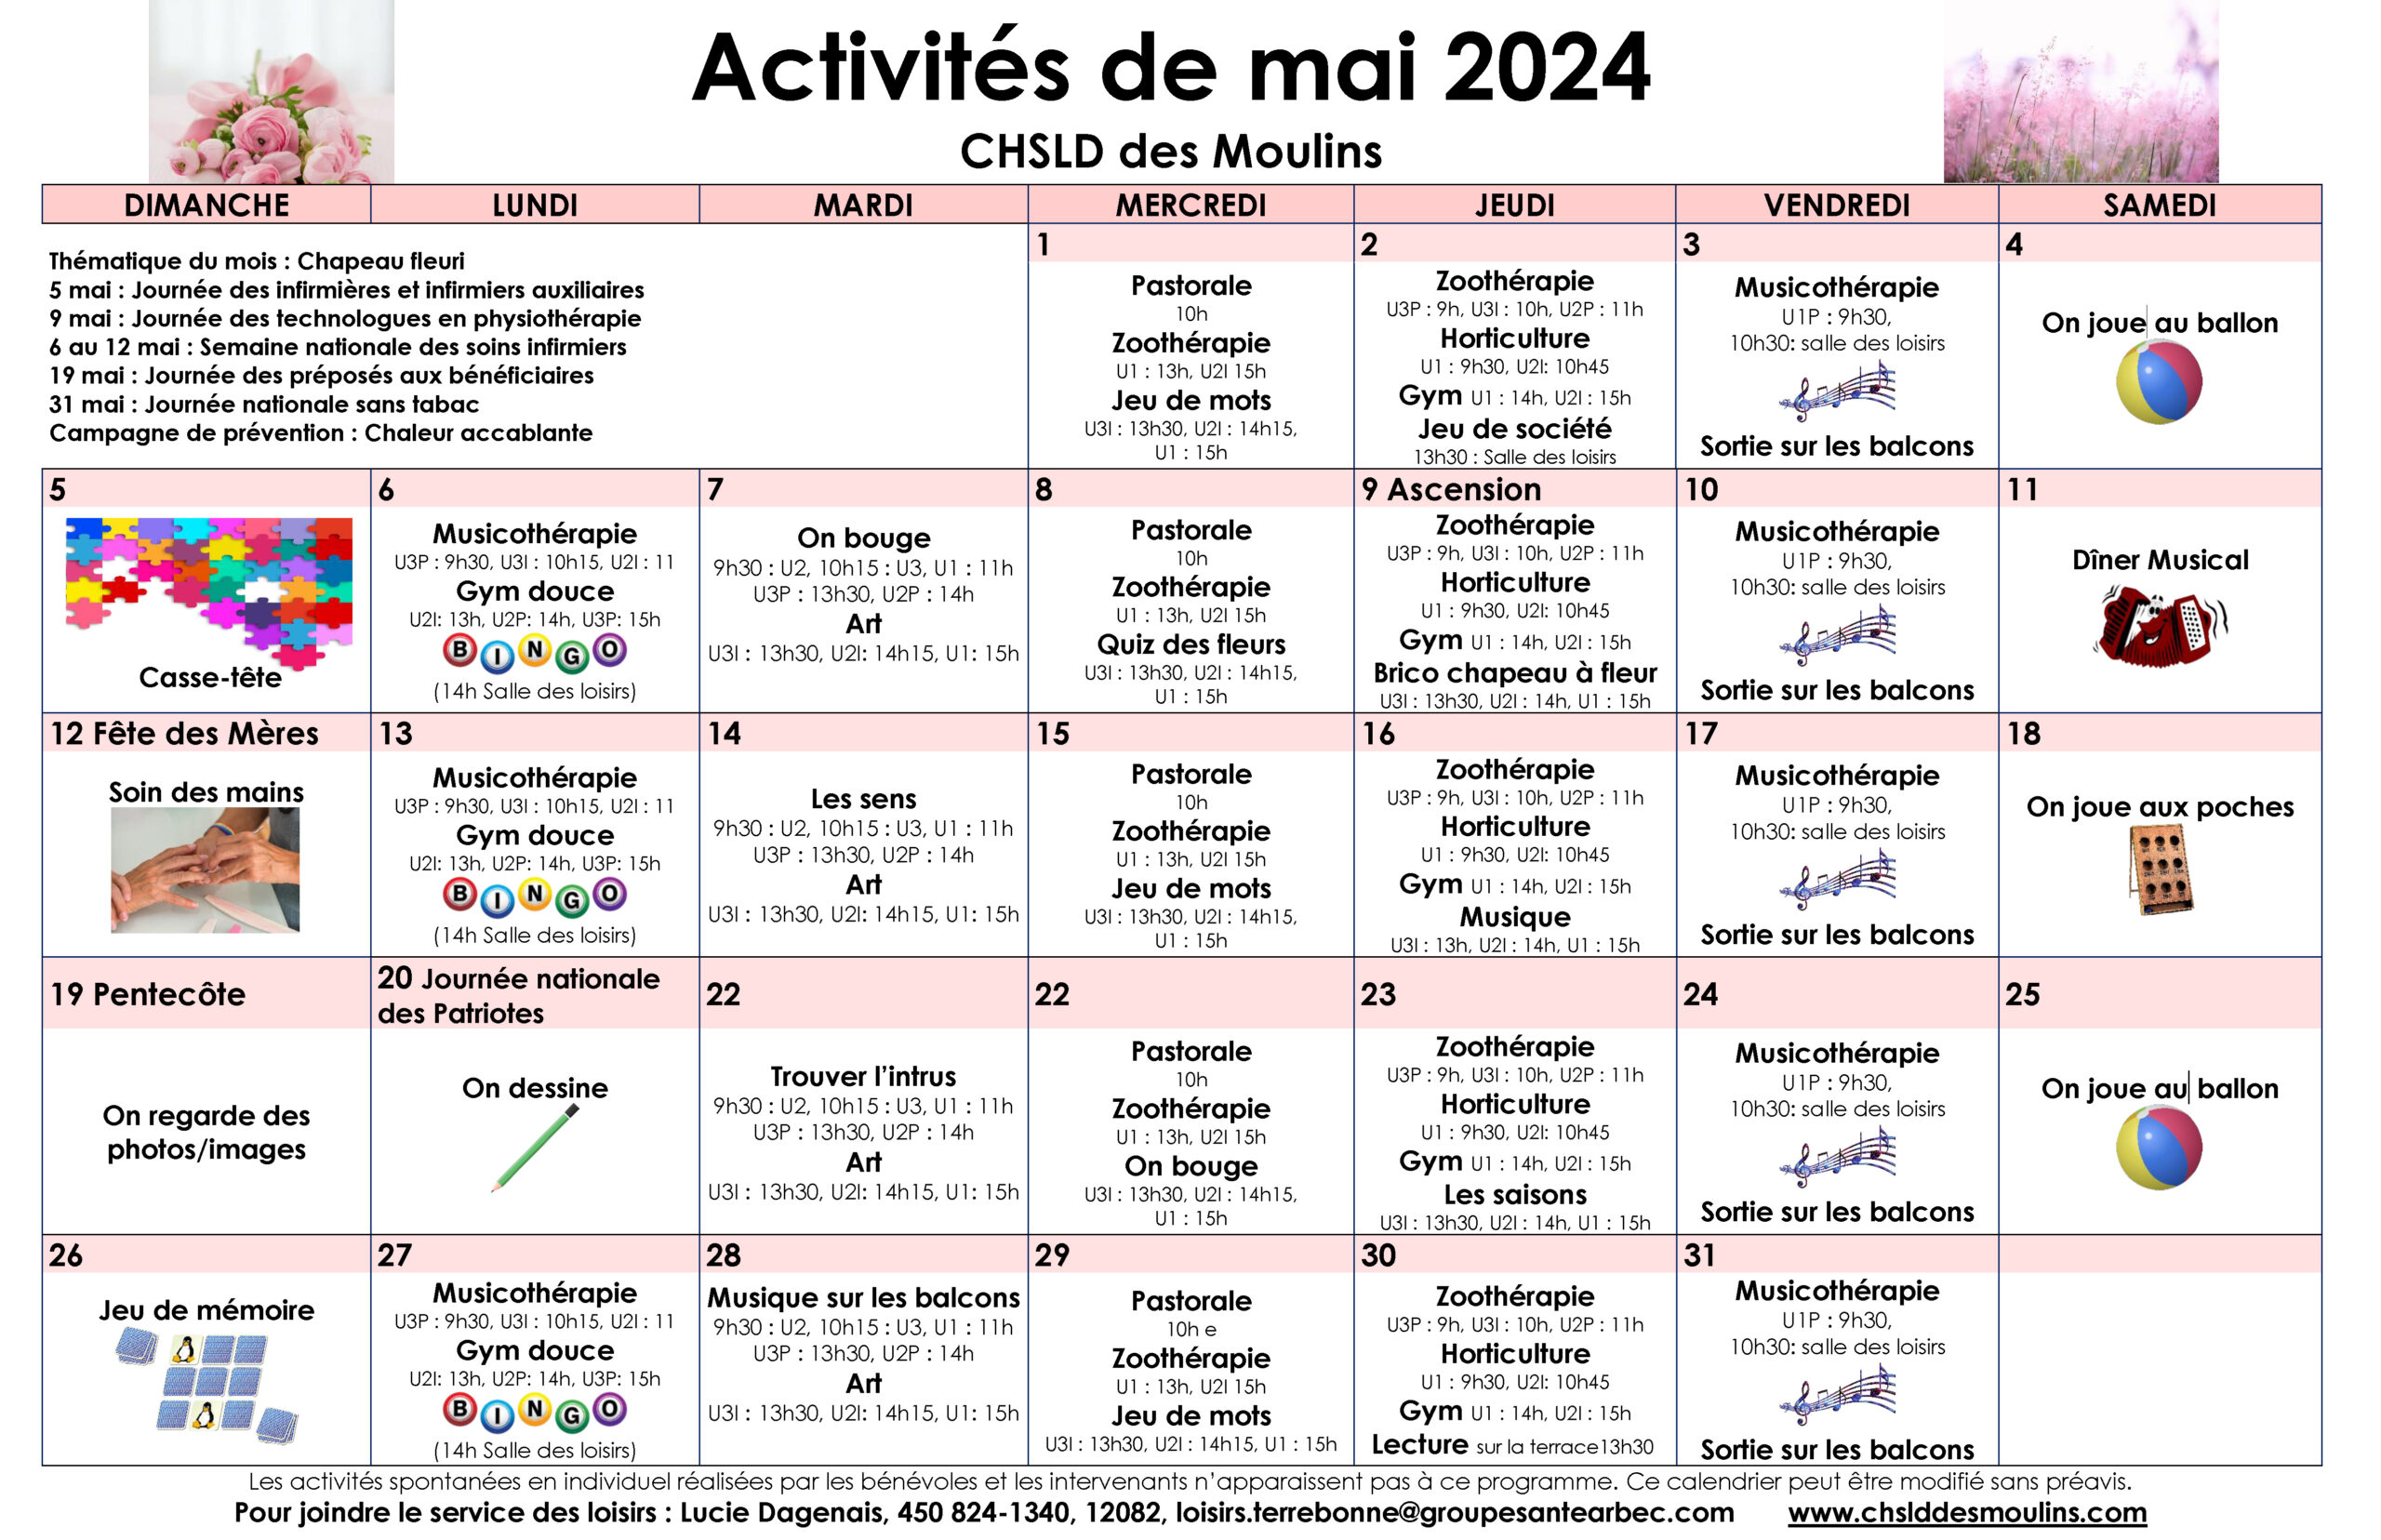 Calendrier des loisirs du mois de mai 2024 pour les résidents du CHSLD des Moulins